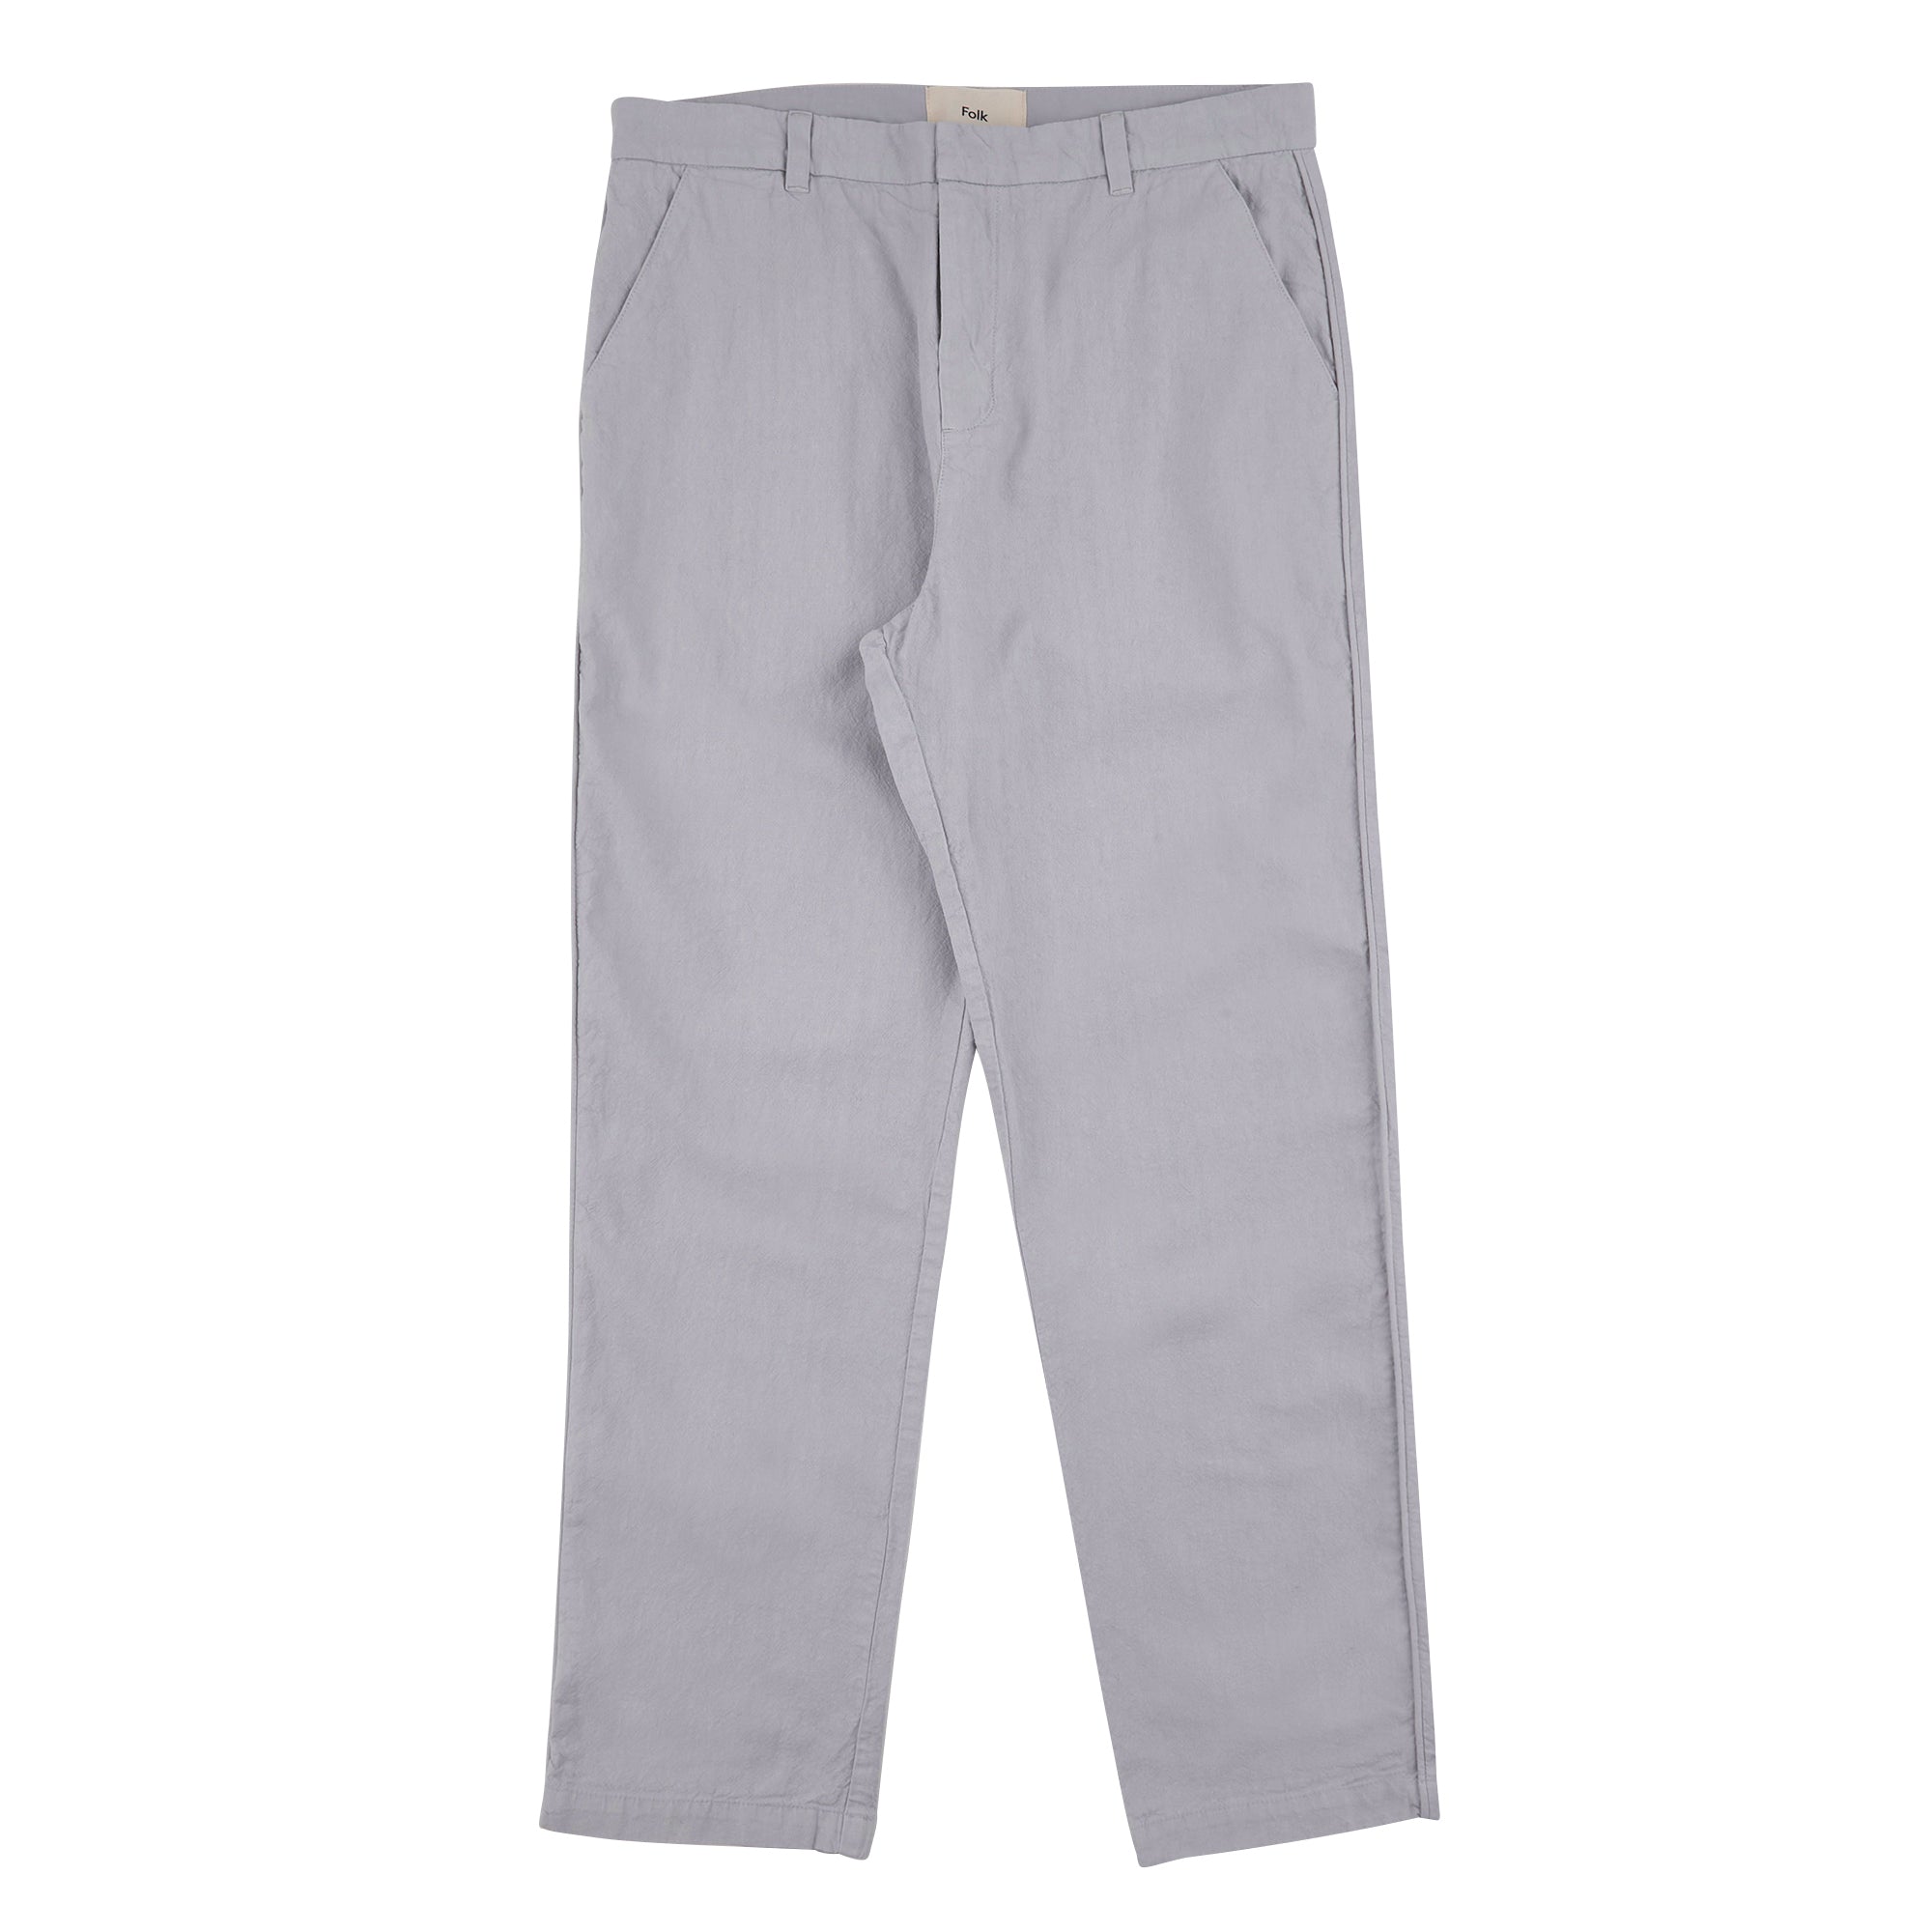 Cotton Linen Trousers - Mist